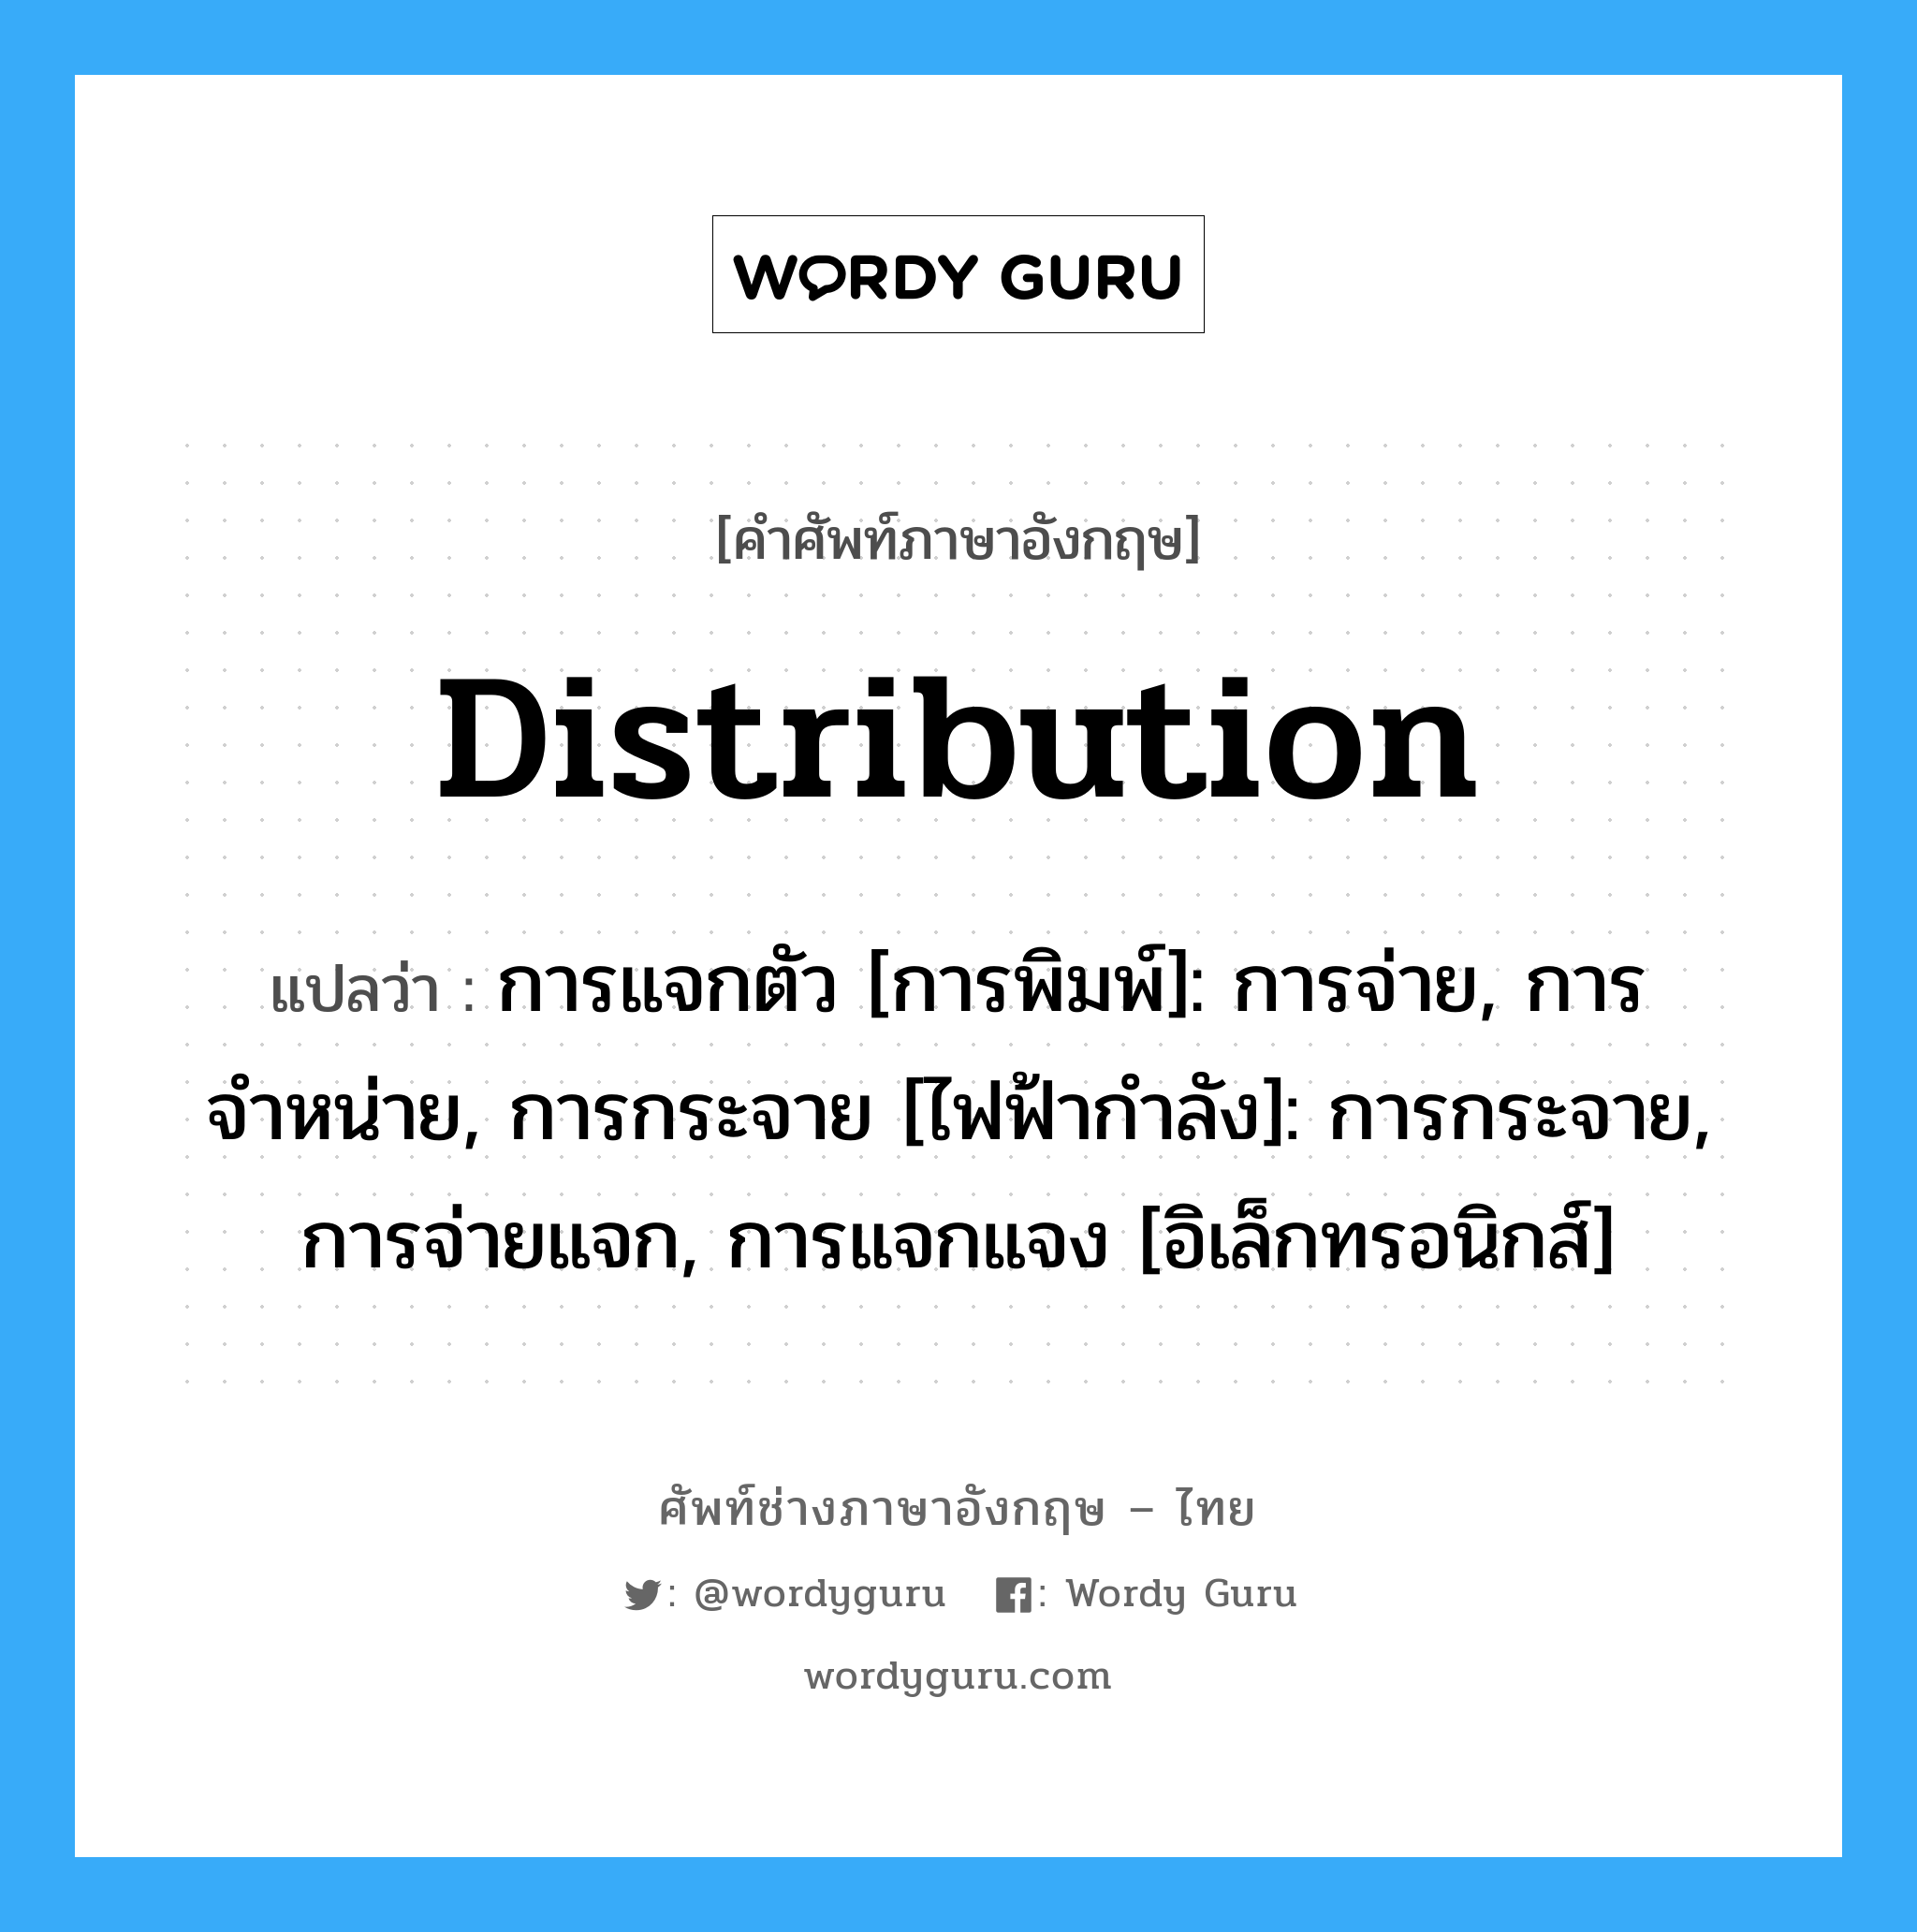 distribution แปลว่า?, คำศัพท์ช่างภาษาอังกฤษ - ไทย distribution คำศัพท์ภาษาอังกฤษ distribution แปลว่า การแจกตัว [การพิมพ์]: การจ่าย, การจำหน่าย, การกระจาย [ไฟฟ้ากำลัง]: การกระจาย, การจ่ายแจก, การแจกแจง [อิเล็กทรอนิกส์]